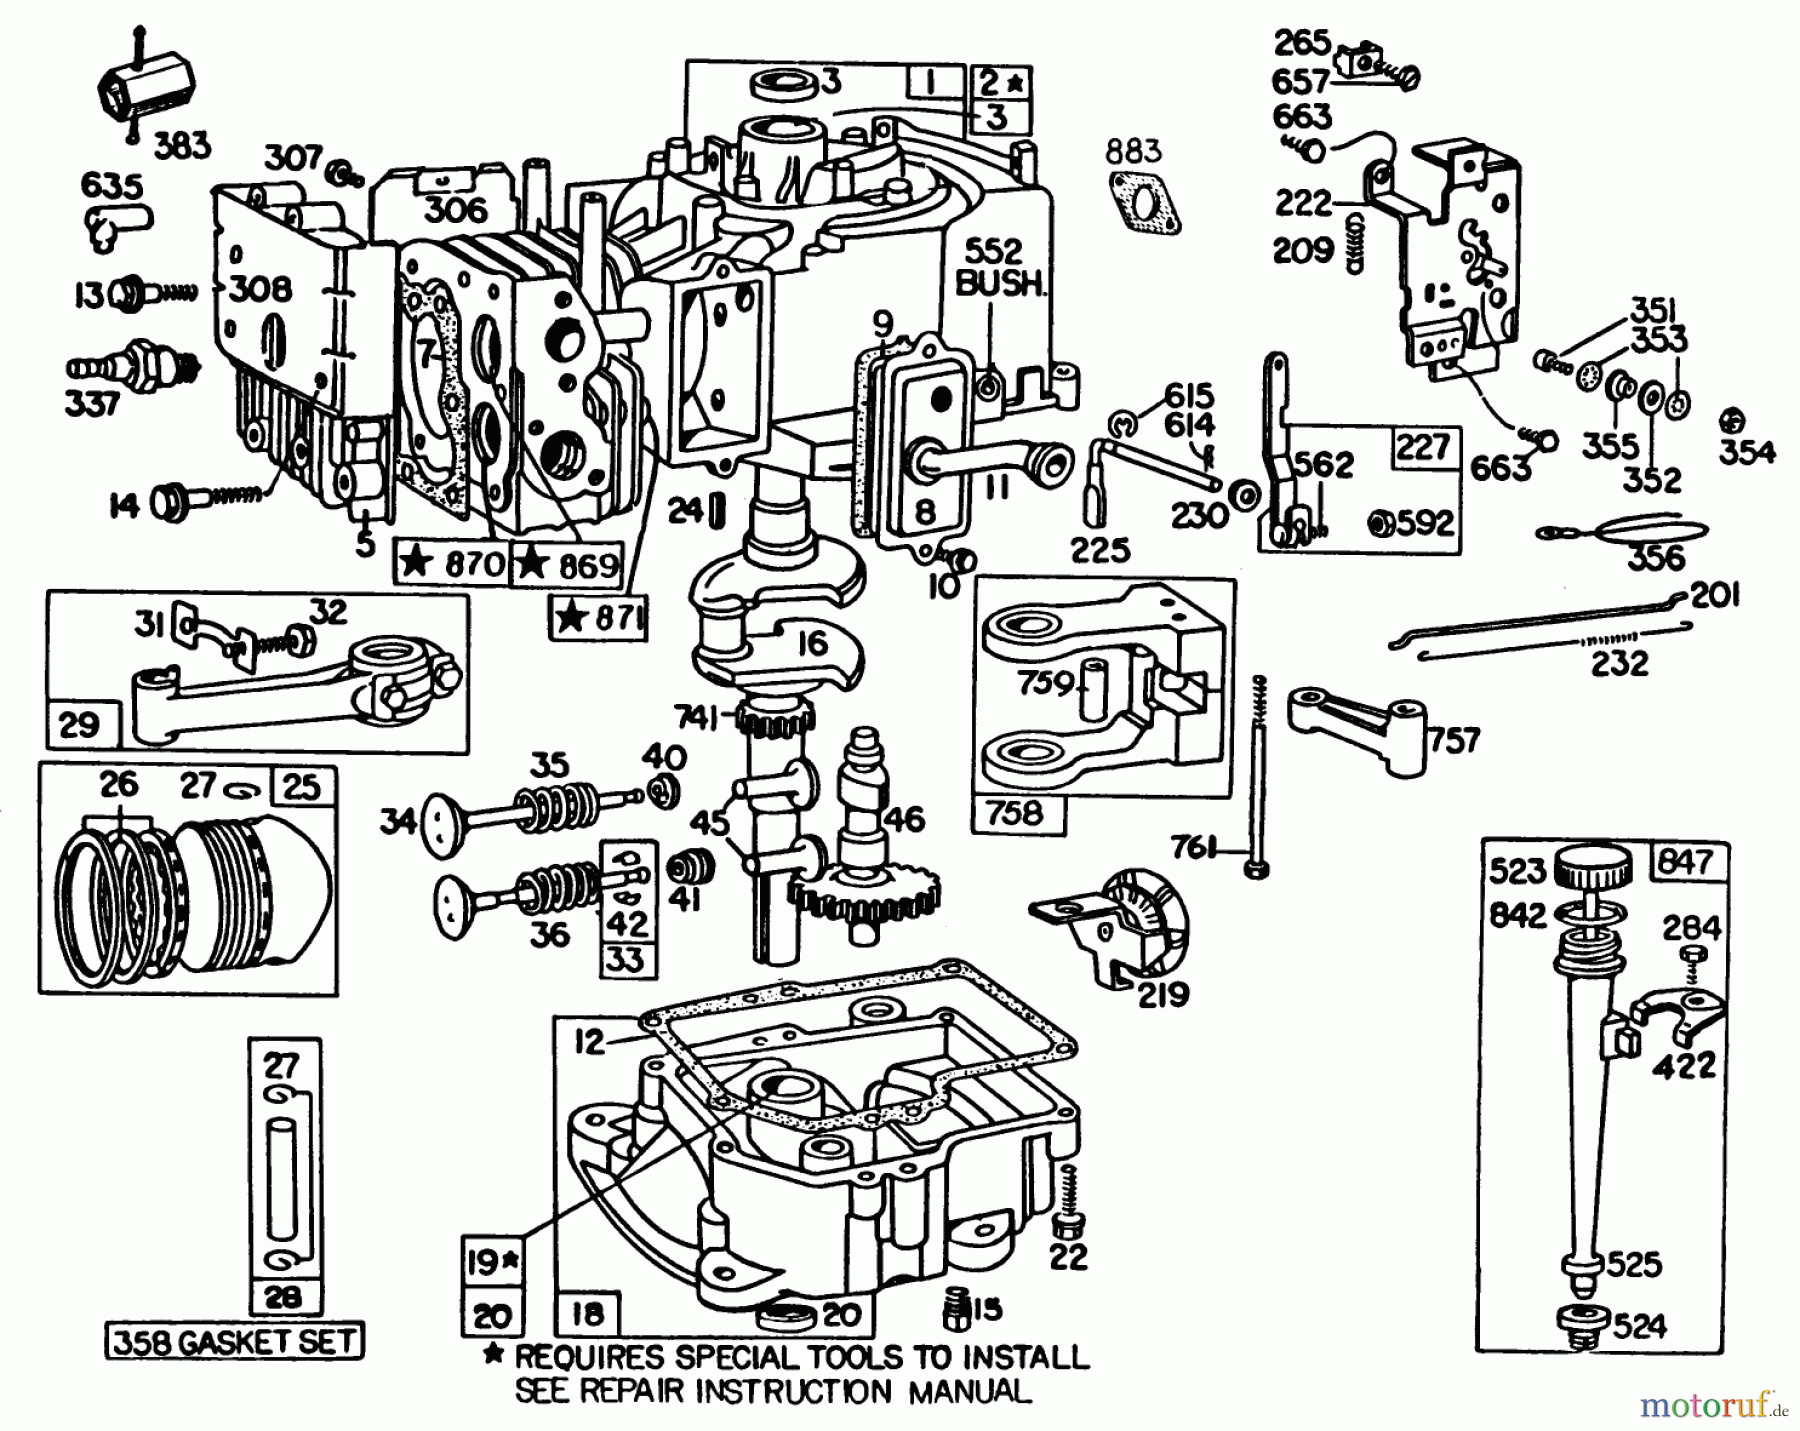  Toro Neu Mowers, Lawn & Garden Tractor Seite 1 57360 (11-32) - Toro 11-32 Lawn Tractor, 1983 (3000001-3999999) ENGINE BRIGGS & STRATTON MODEL 191707-5816-01 (MODEL 57300)